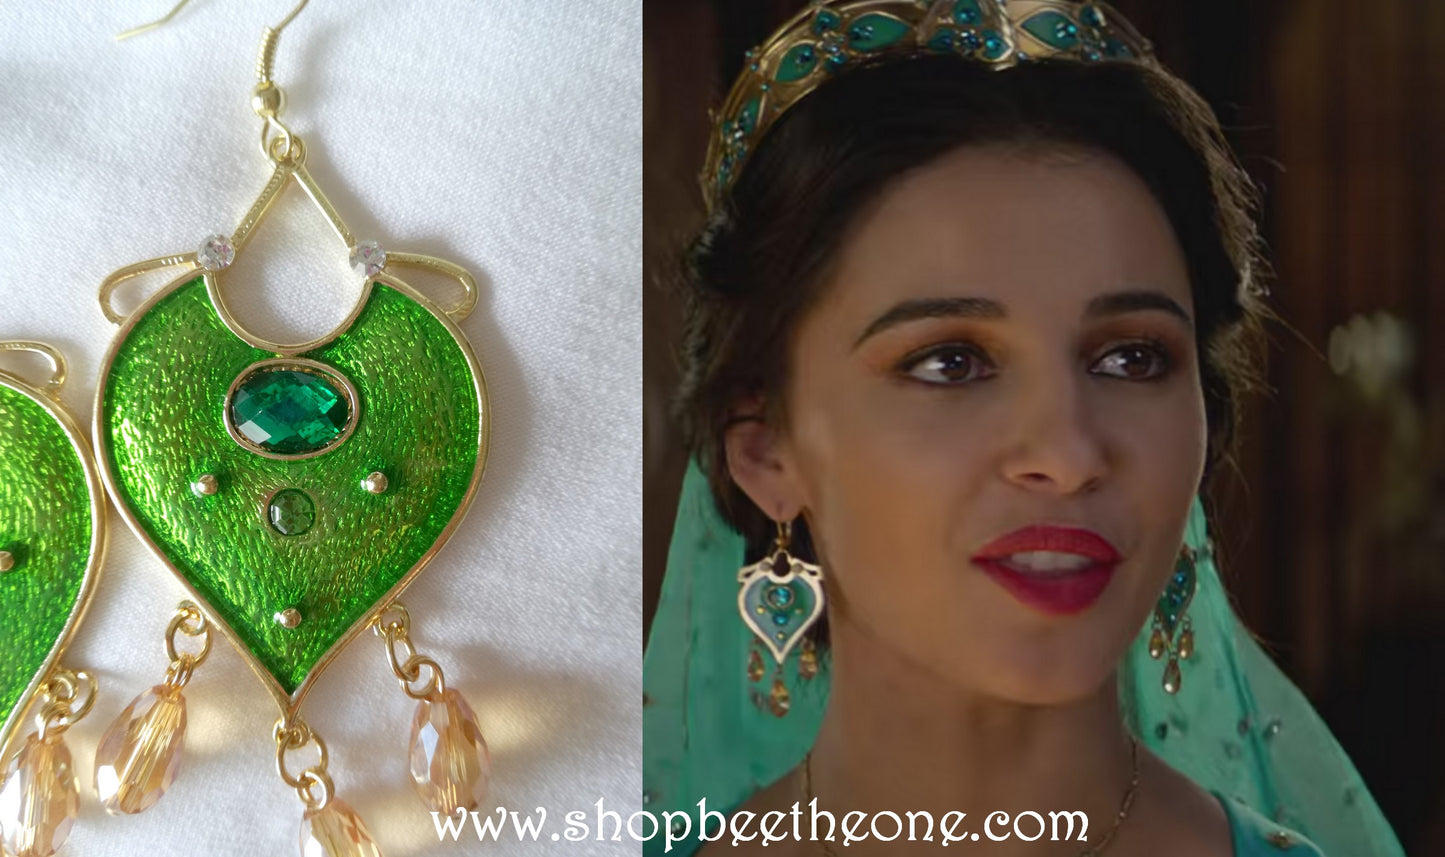 Boucles d'oreilles émeraude et perles, portées par Jasmine dans le film Aladdin